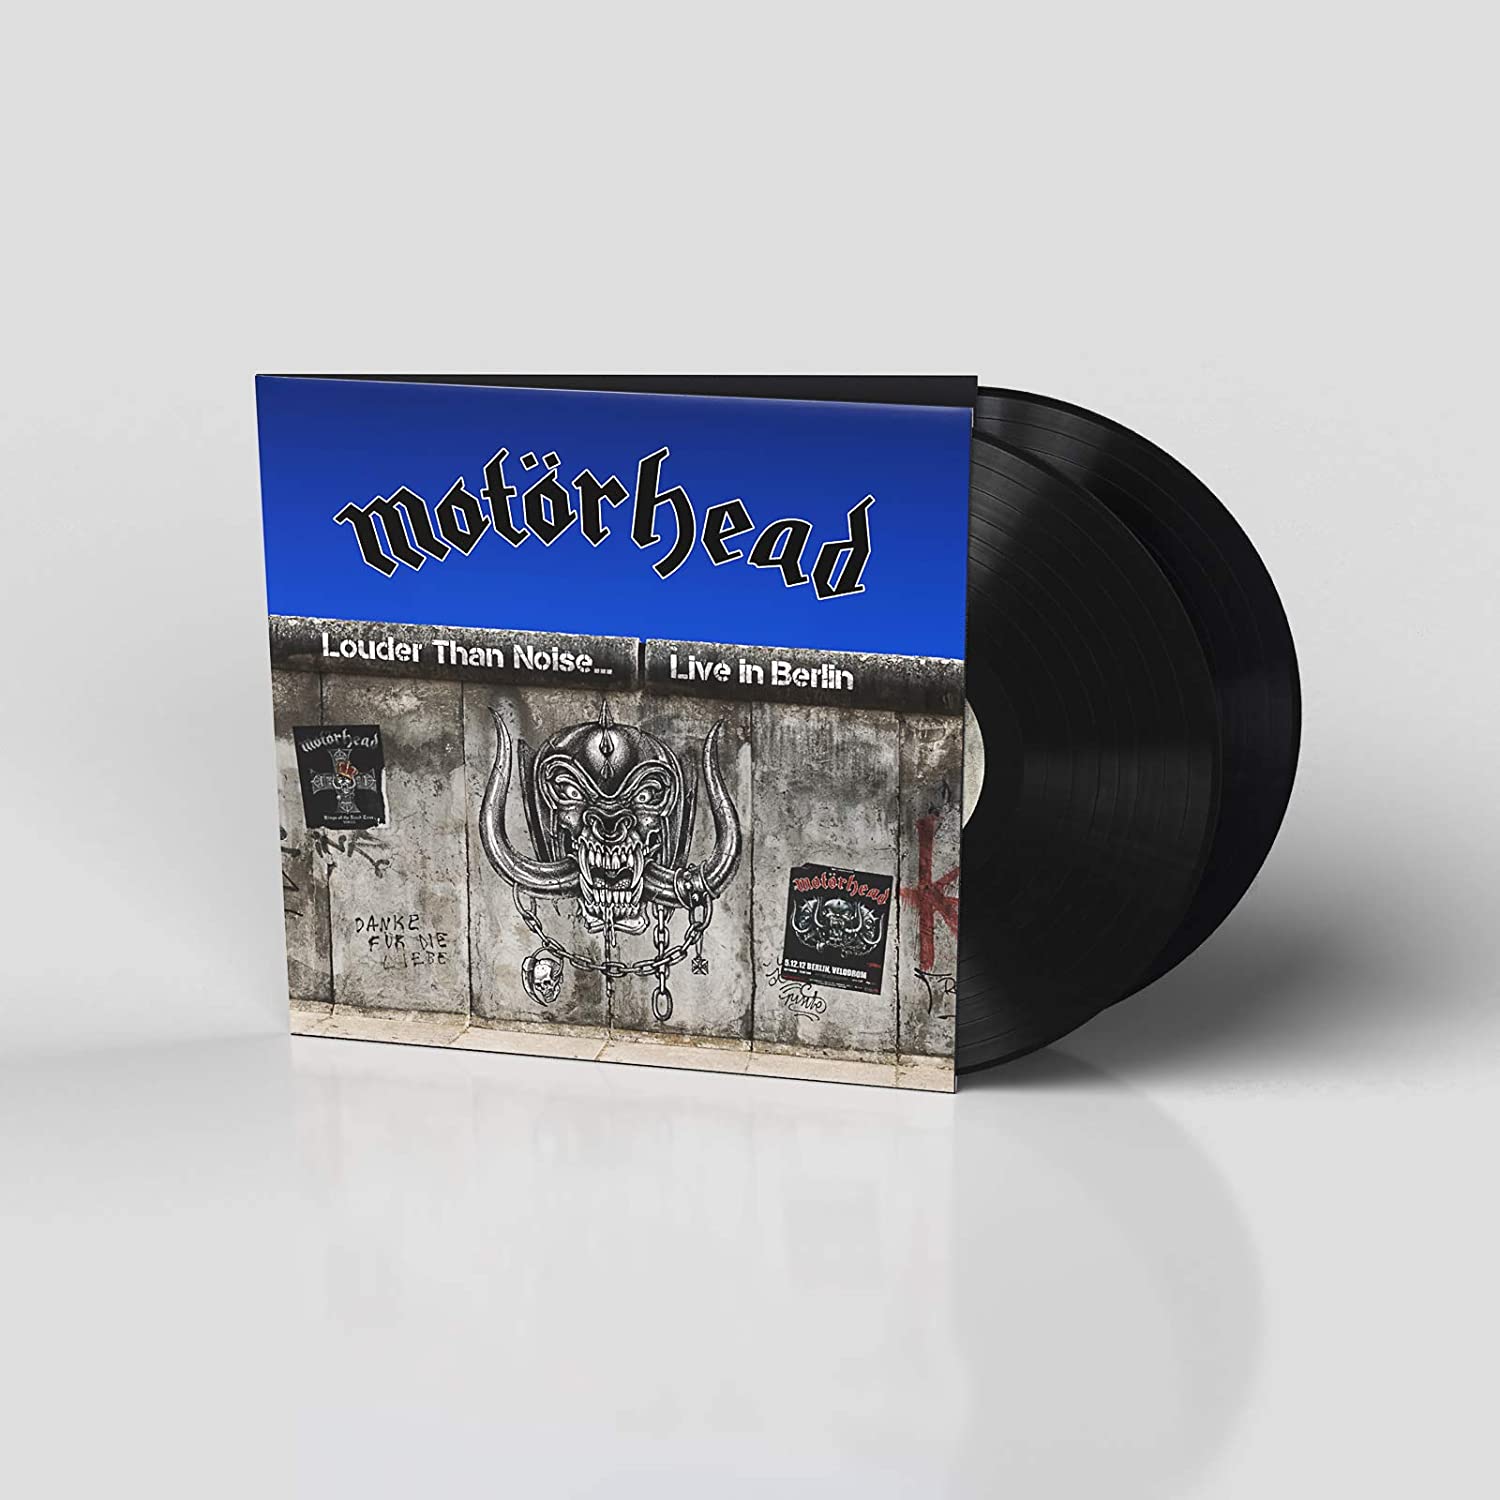 Motorhead "Louder Than Noise - Live In Berlin" 2x12" Vinyl